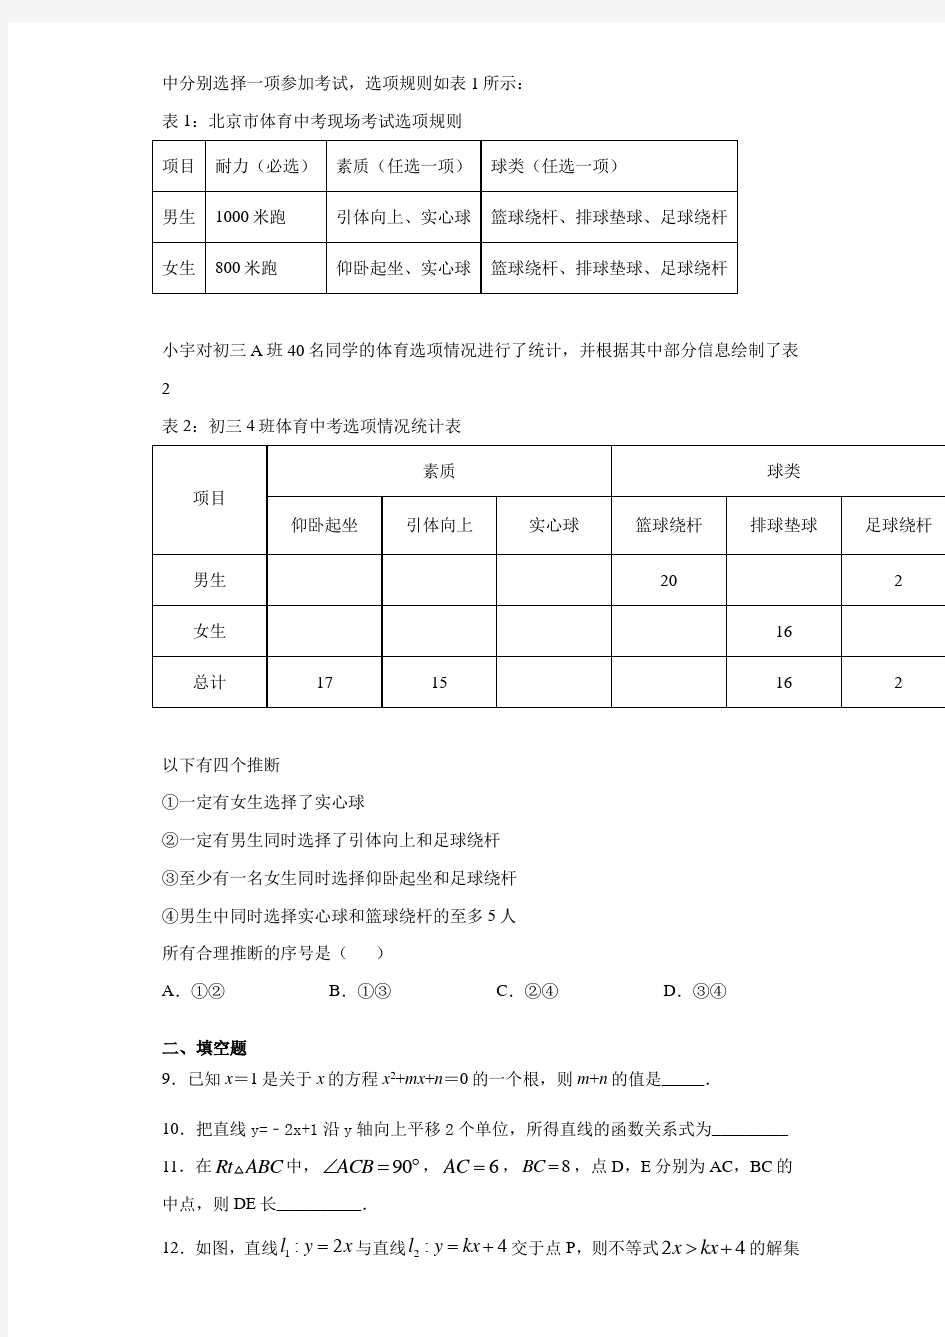 北京人大附中2020-2021学年九年级(上)开学数学试题